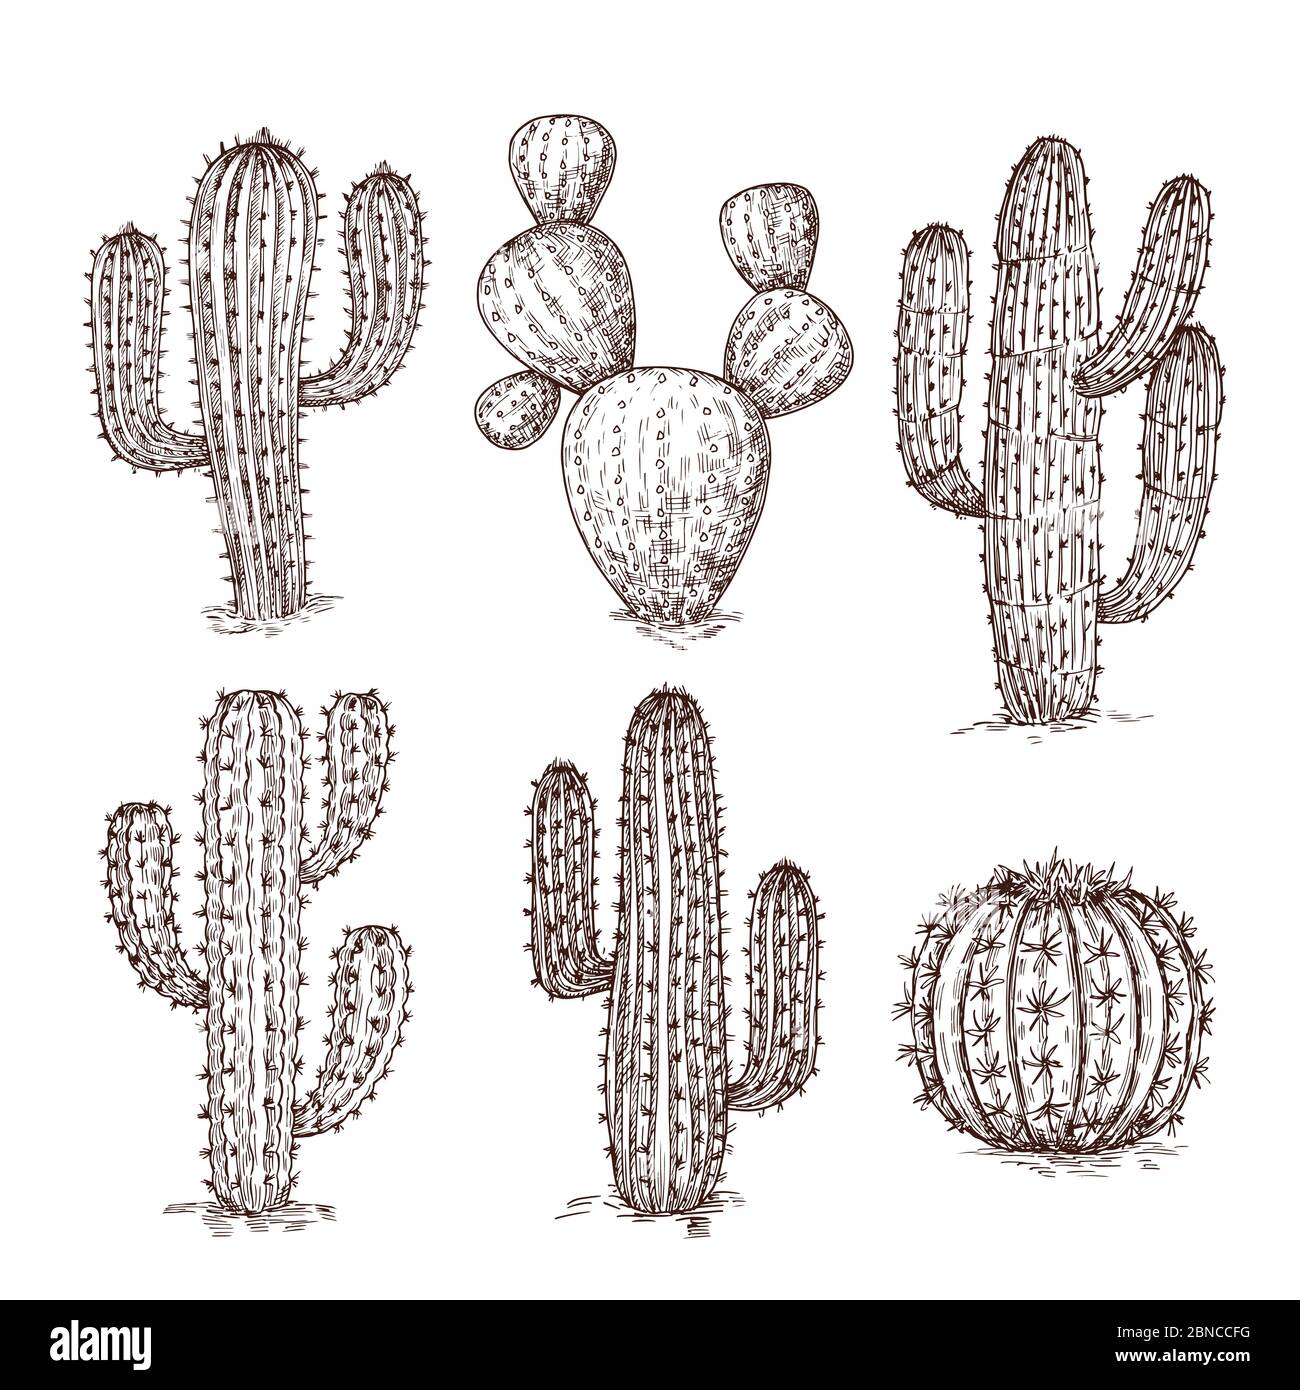 Schizzo del cactus. Cactus desertici disegnati a mano. Serie vettoriale di piante messicane d'epoca. Collezione di cactus deserti, incisione di cactus tropicali illustrazione Illustrazione Vettoriale